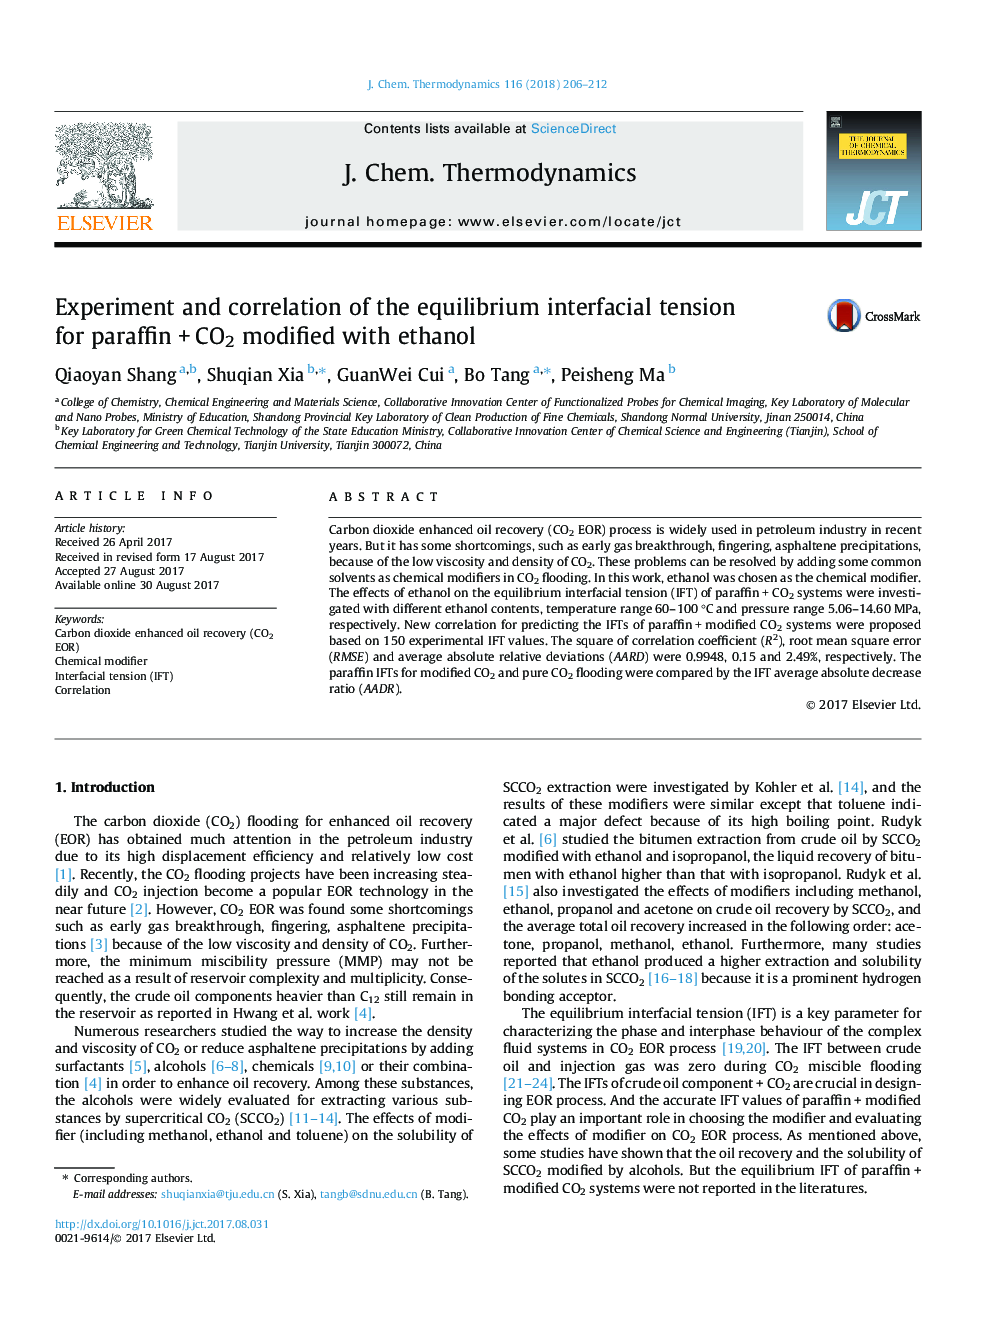 آزمایش و همبستگی تنش بین سطحی تعادل برای پارافین +CO2 اصلاح شده با اتانول